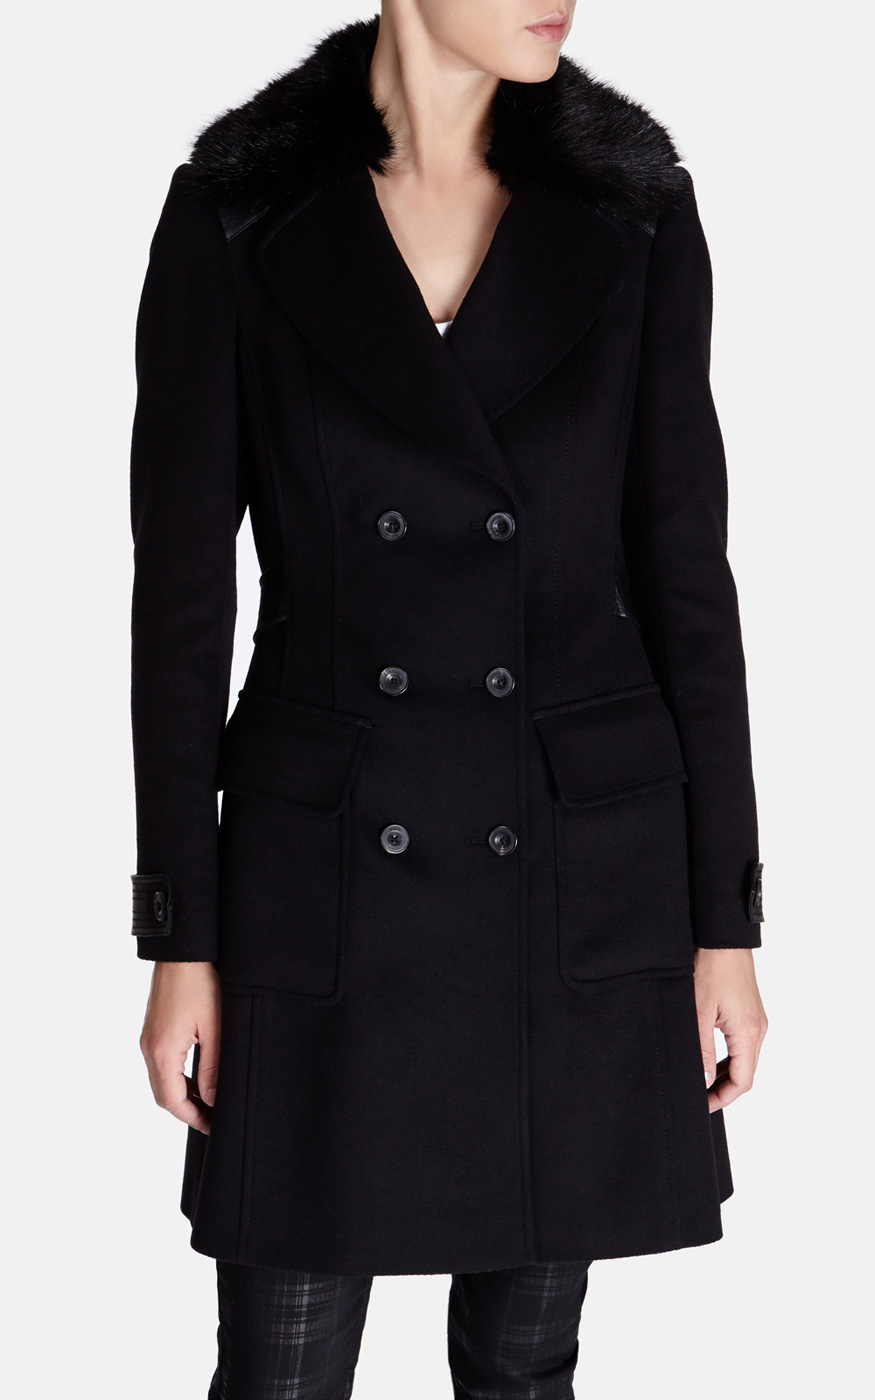 Karen millen Classic Investment Coat in Black | Lyst